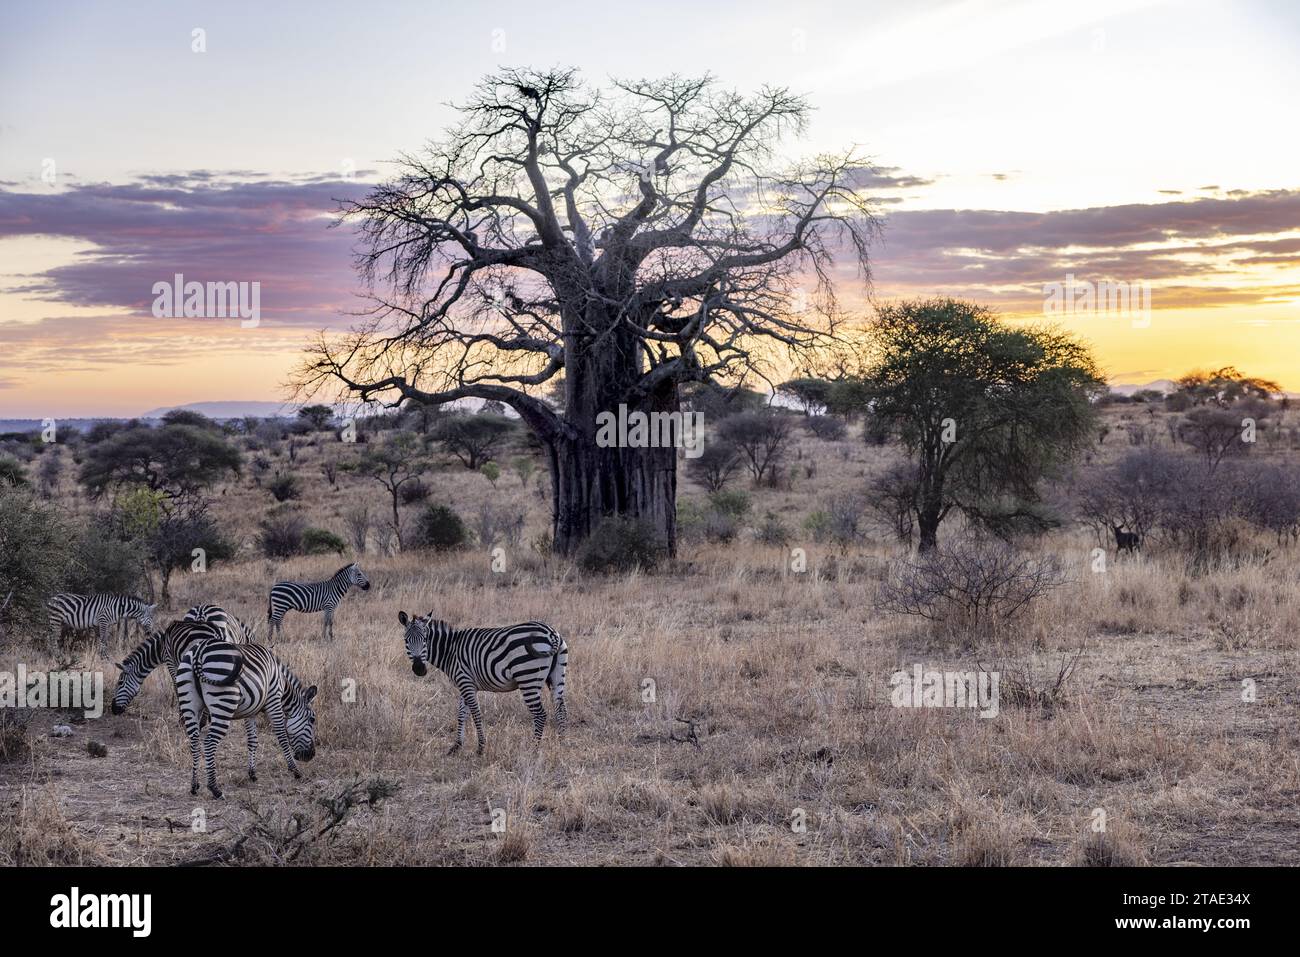 Tansania, WMA (Wildlife Management Area) von Randilen, Bezirk Monduli, Region Arusha, eine Herde von Zebras in der Abenddämmerung vor einem Baobab-Baum Stockfoto